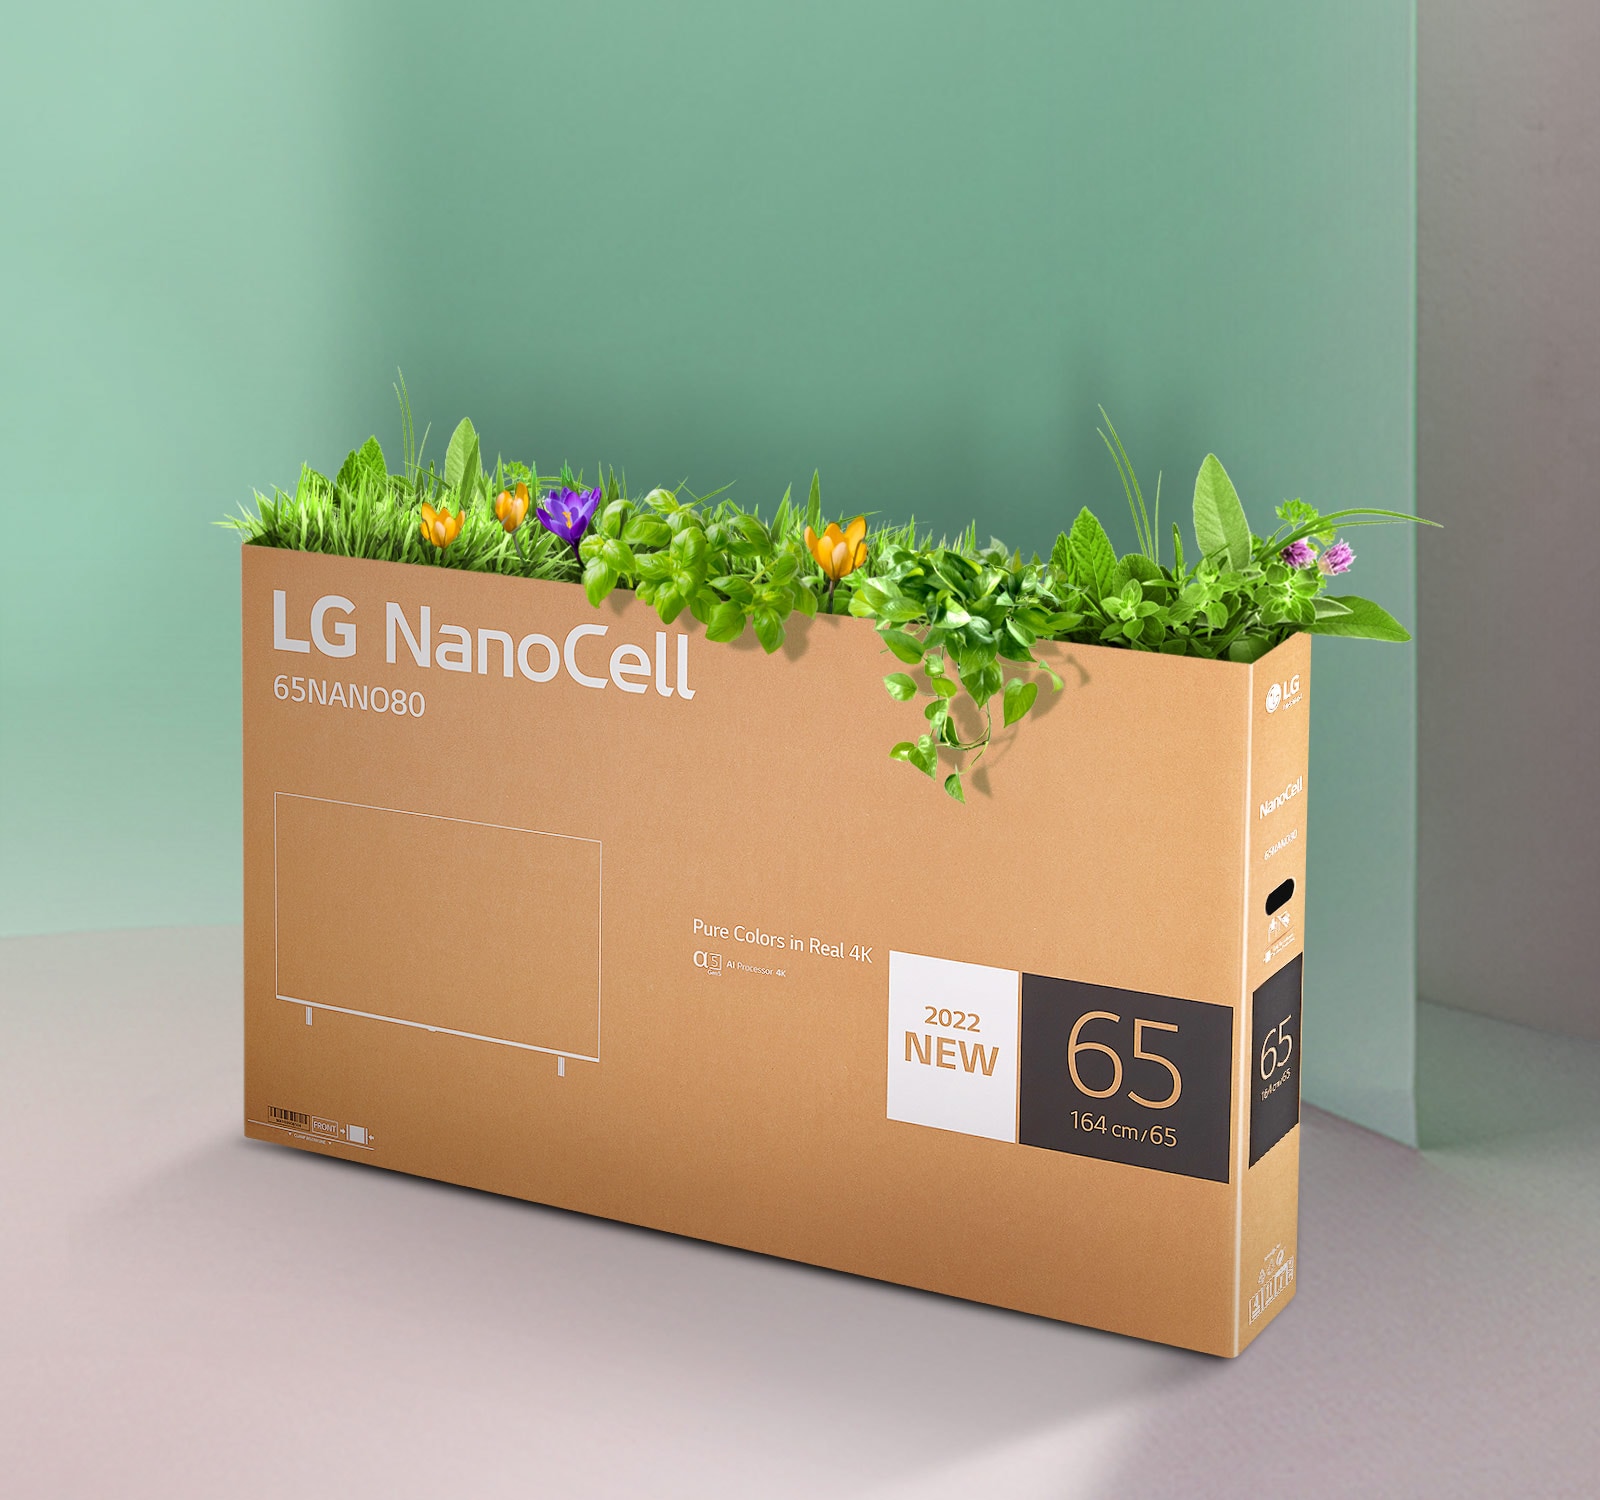 Recyklovateľné balenie televízora LG NanoCell s kvetmi a rastlinami, ktoré vyrastajú z vrchnej časti škatule.